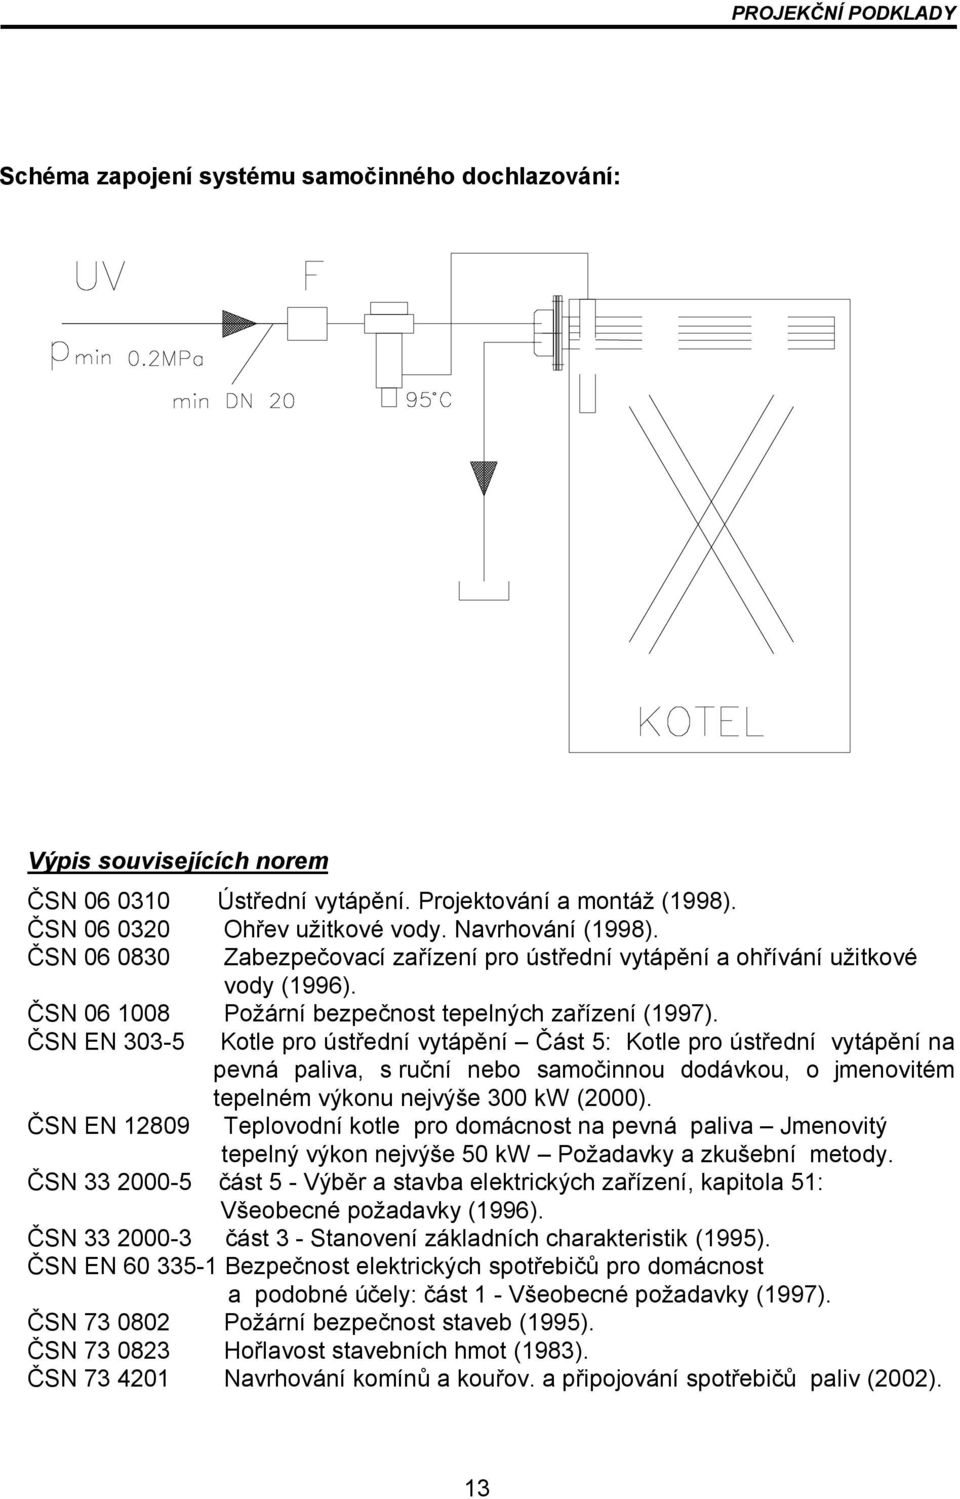 ČSN EN 303-5 Kotle pro ústřední vytápění Část 5: Kotle pro ústřední vytápění na pevná paliva, s ruční nebo samočinnou dodávkou, o jmenovitém tepelném výkonu nejvýše 300 kw (2000).